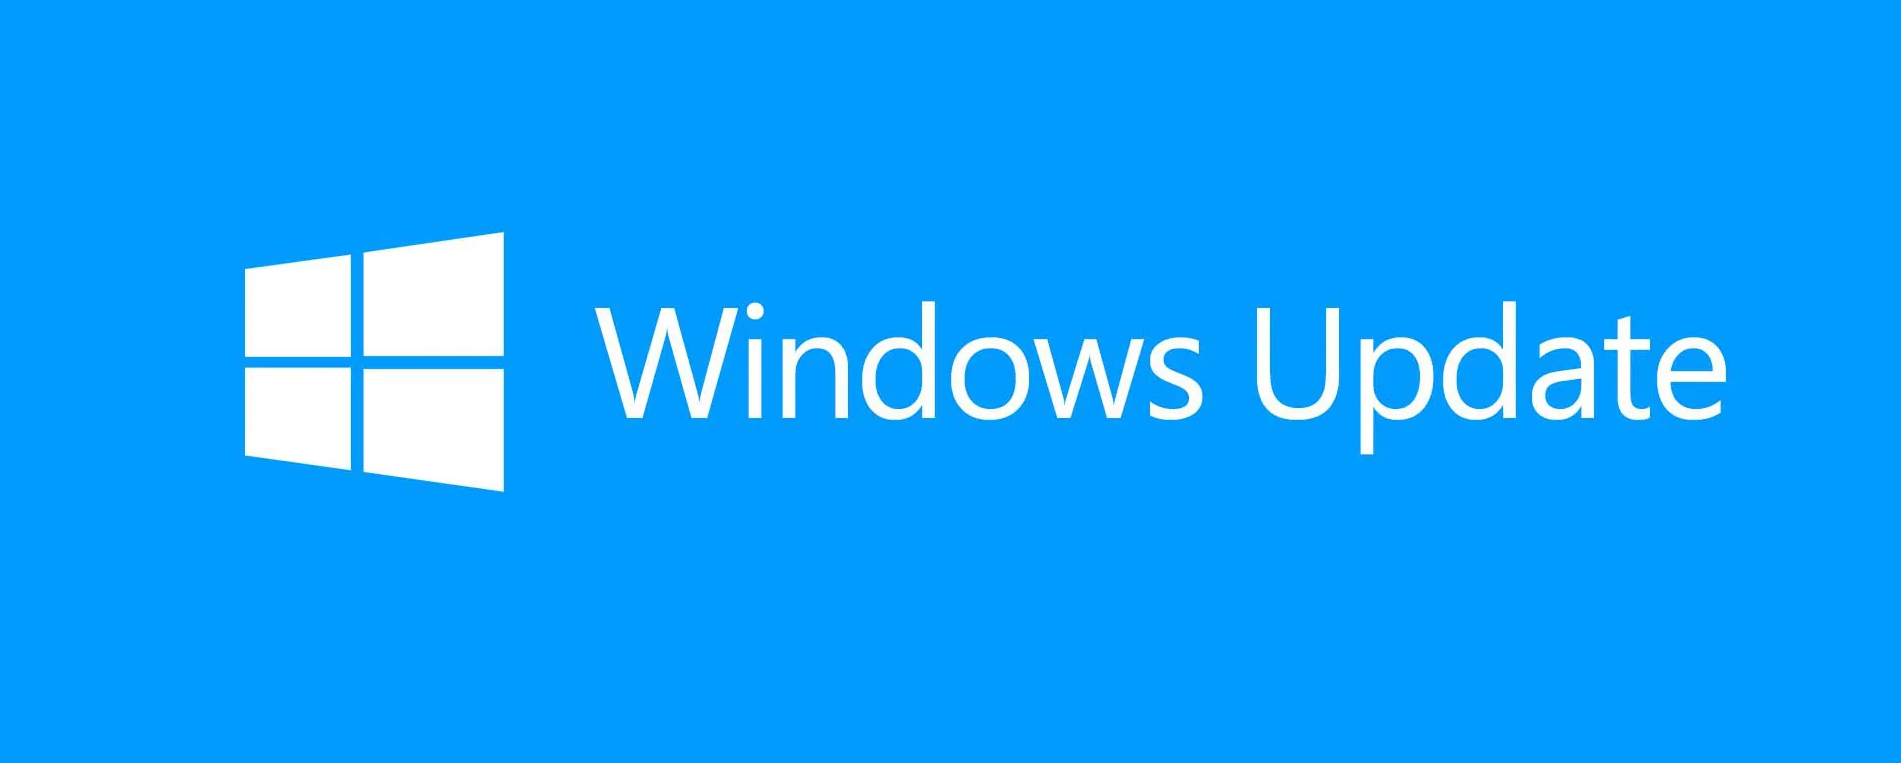 Microsoft ha lanzado actualizaciones de seguridad para 121 vulnerabilidades incluyendo dos de Día Cero (0-day